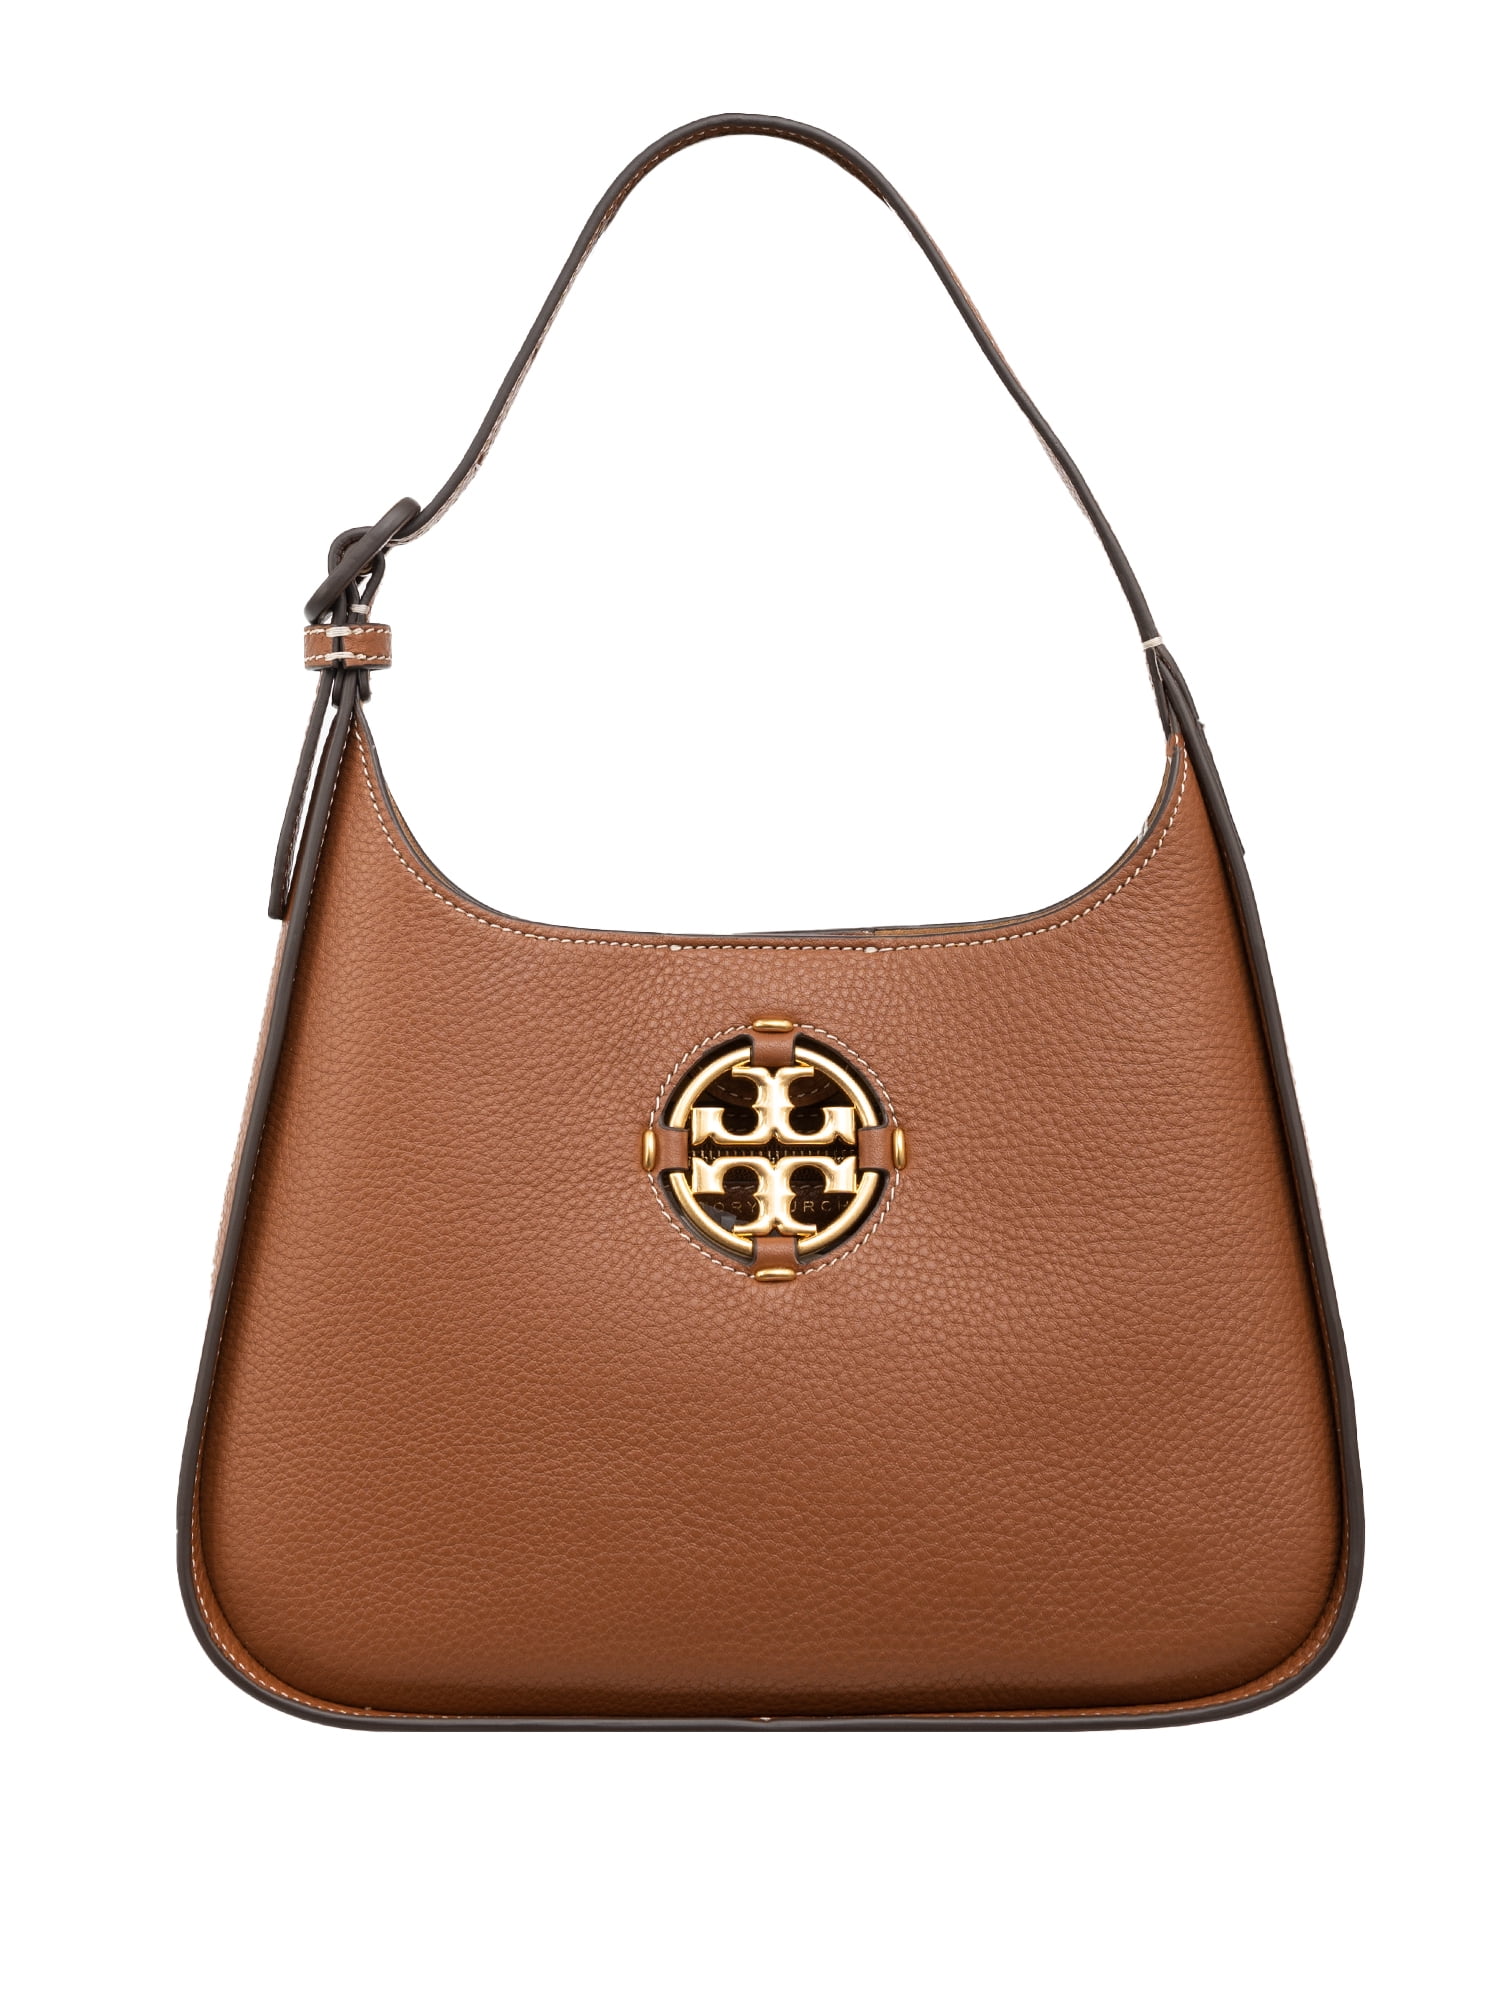 Miller Phone Crossbody: Women's Handbags, Mini Bags